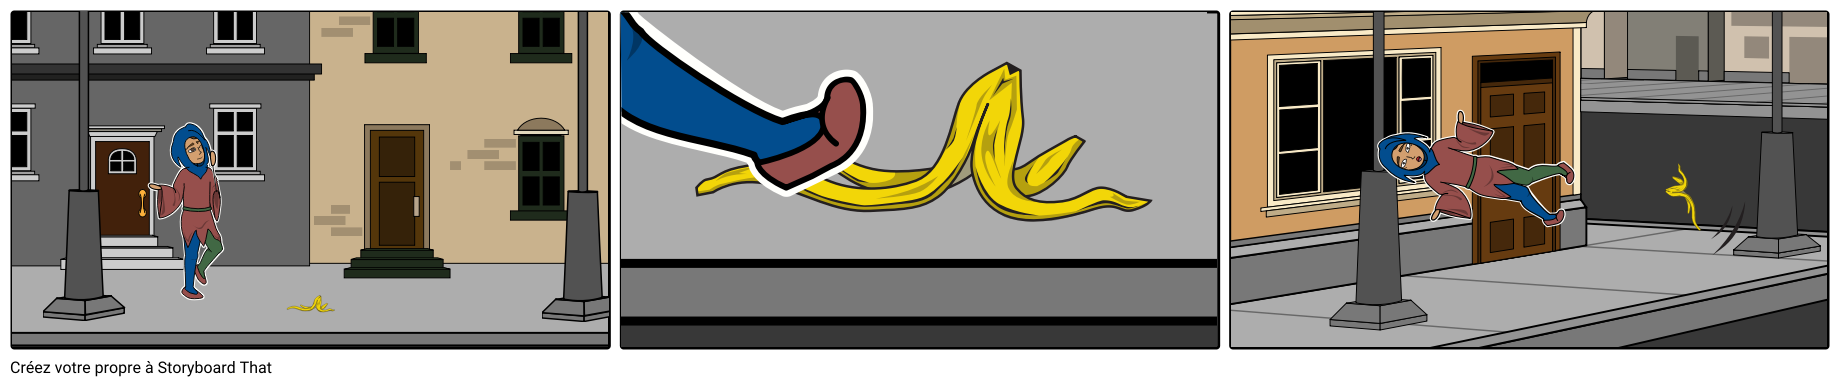 Jester glisse sur la peau de banane